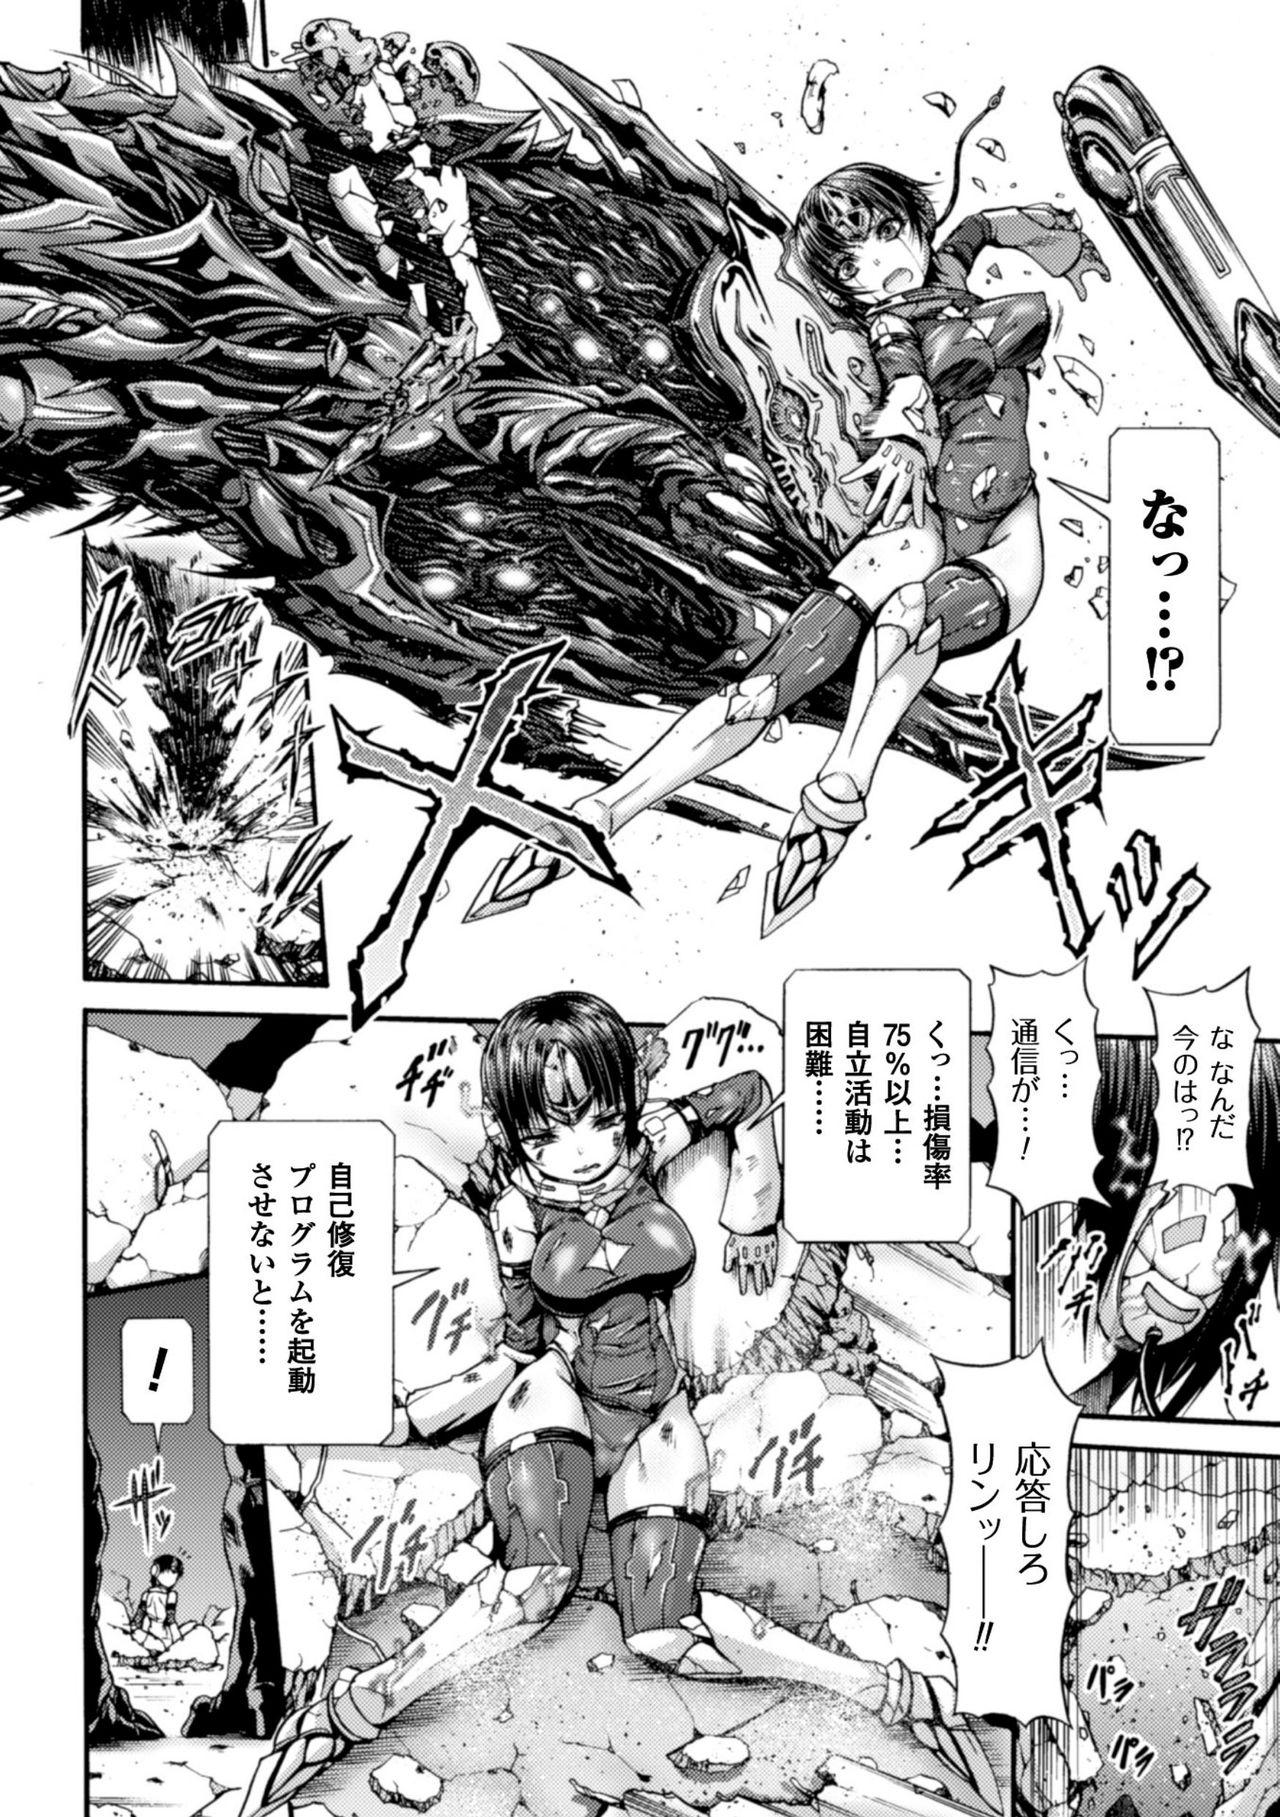 Seigi no Heroine Kangoku File Vol. 8 60